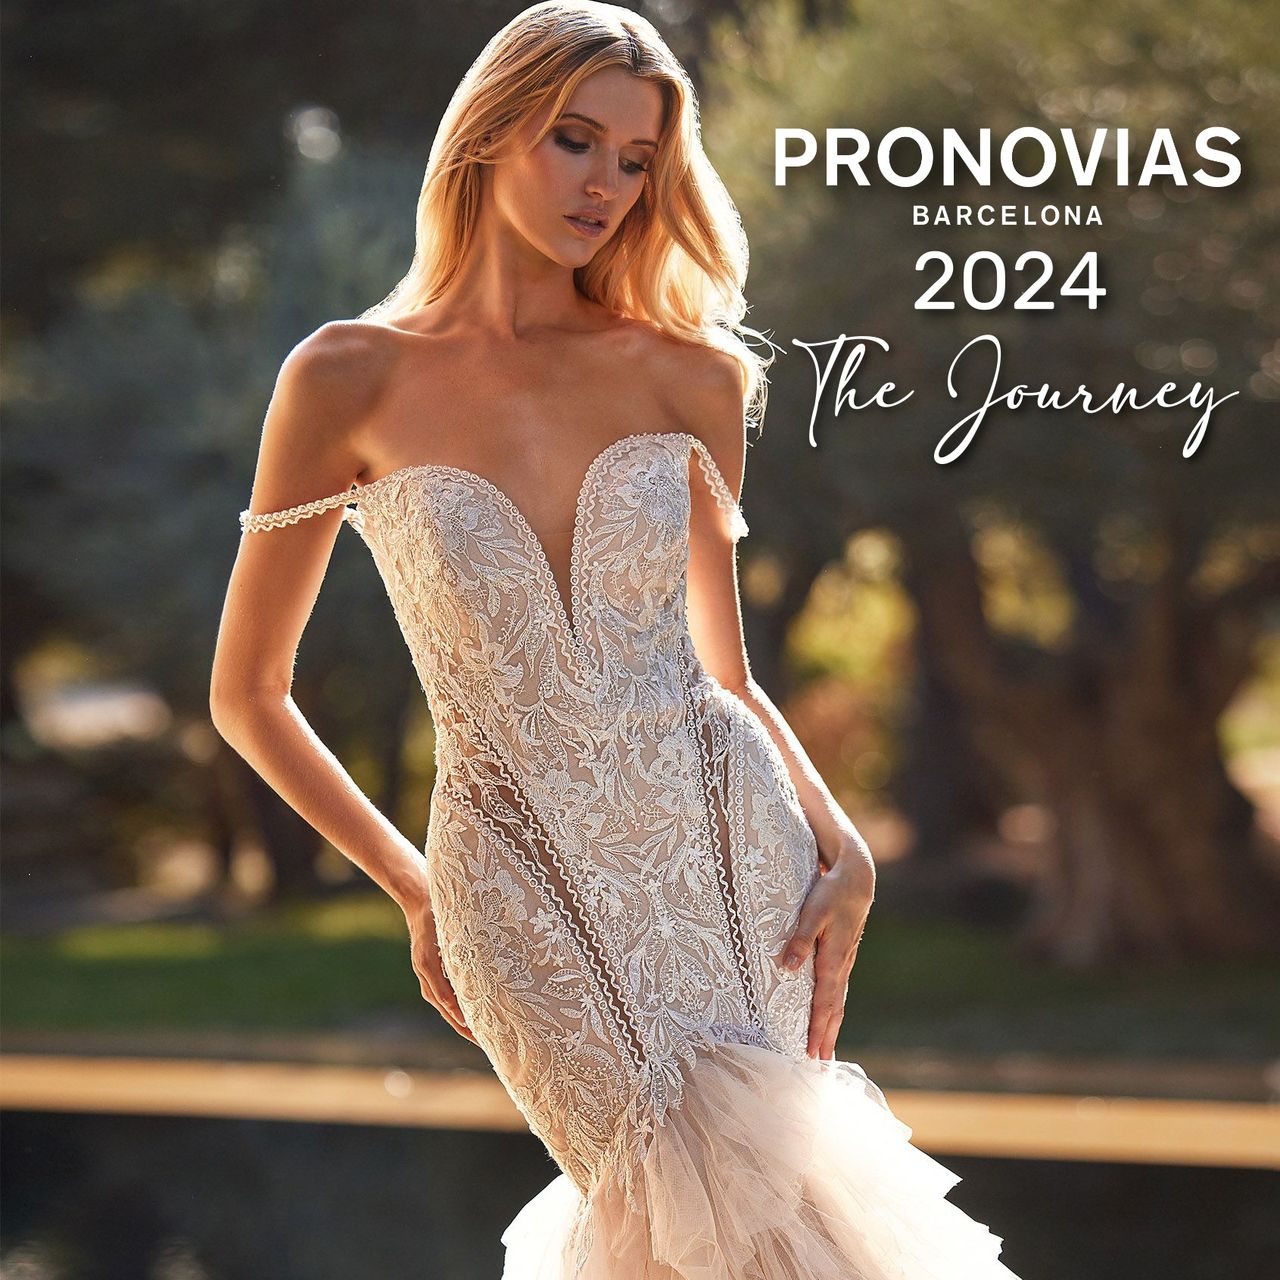 Pronovias 2024 The Journey esküvői ruha kollekció